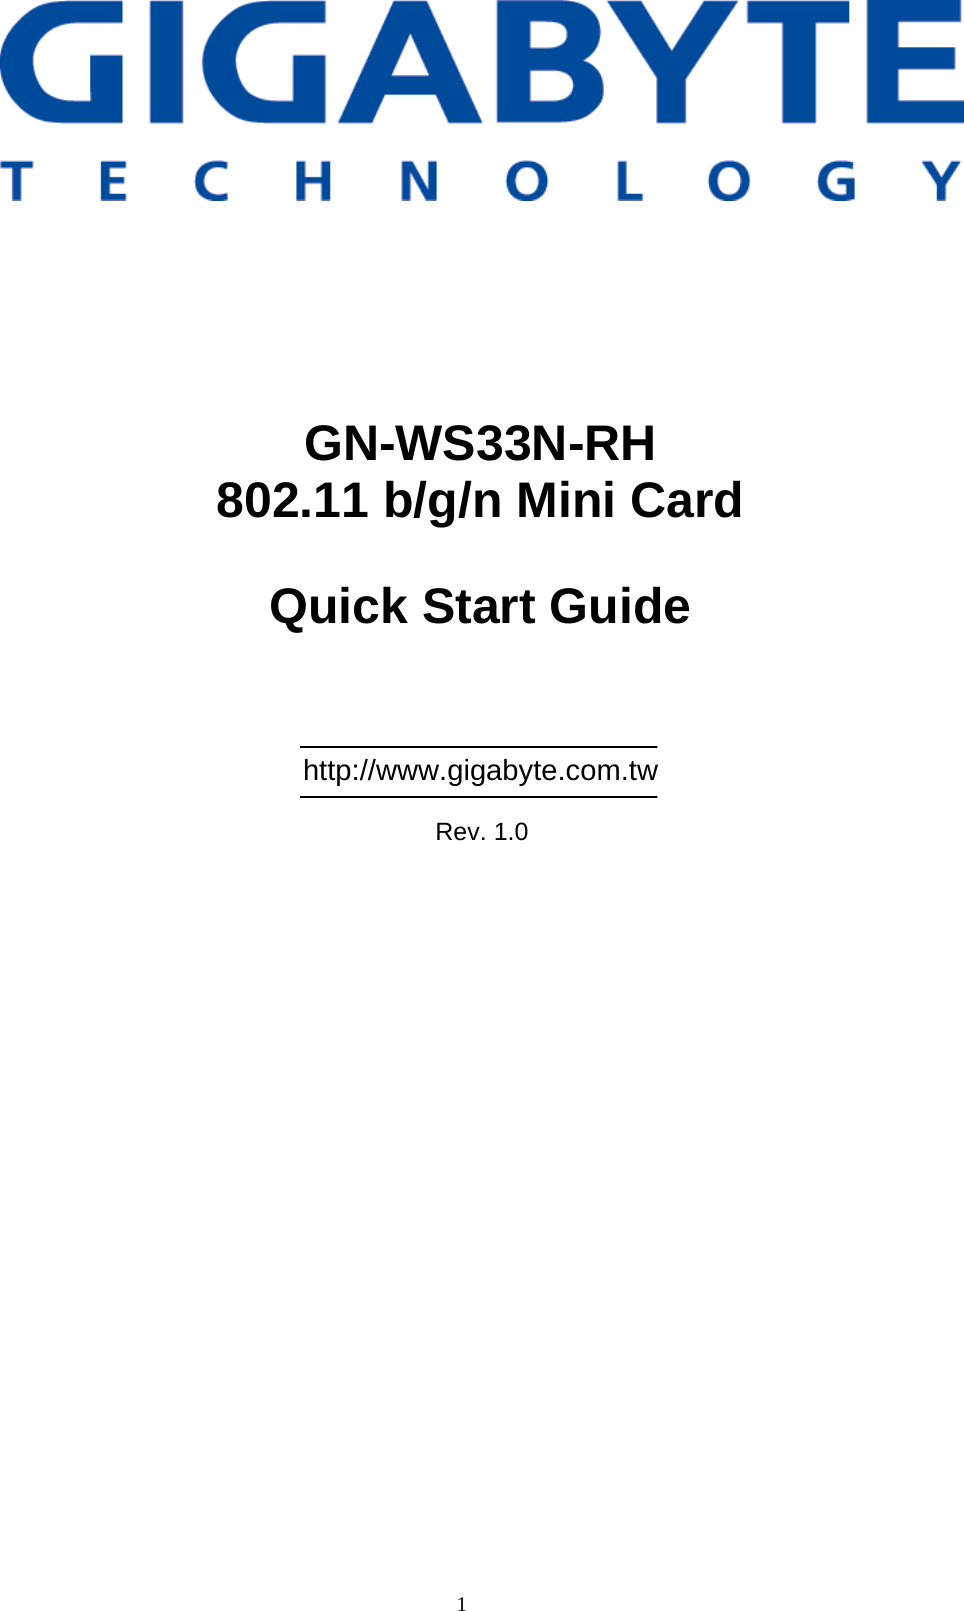 1                  GN-WS33N-RH 802.11 b/g/n Mini Card  Quick Start Guide      http://www.gigabyte.com.tw  Rev. 1.0 